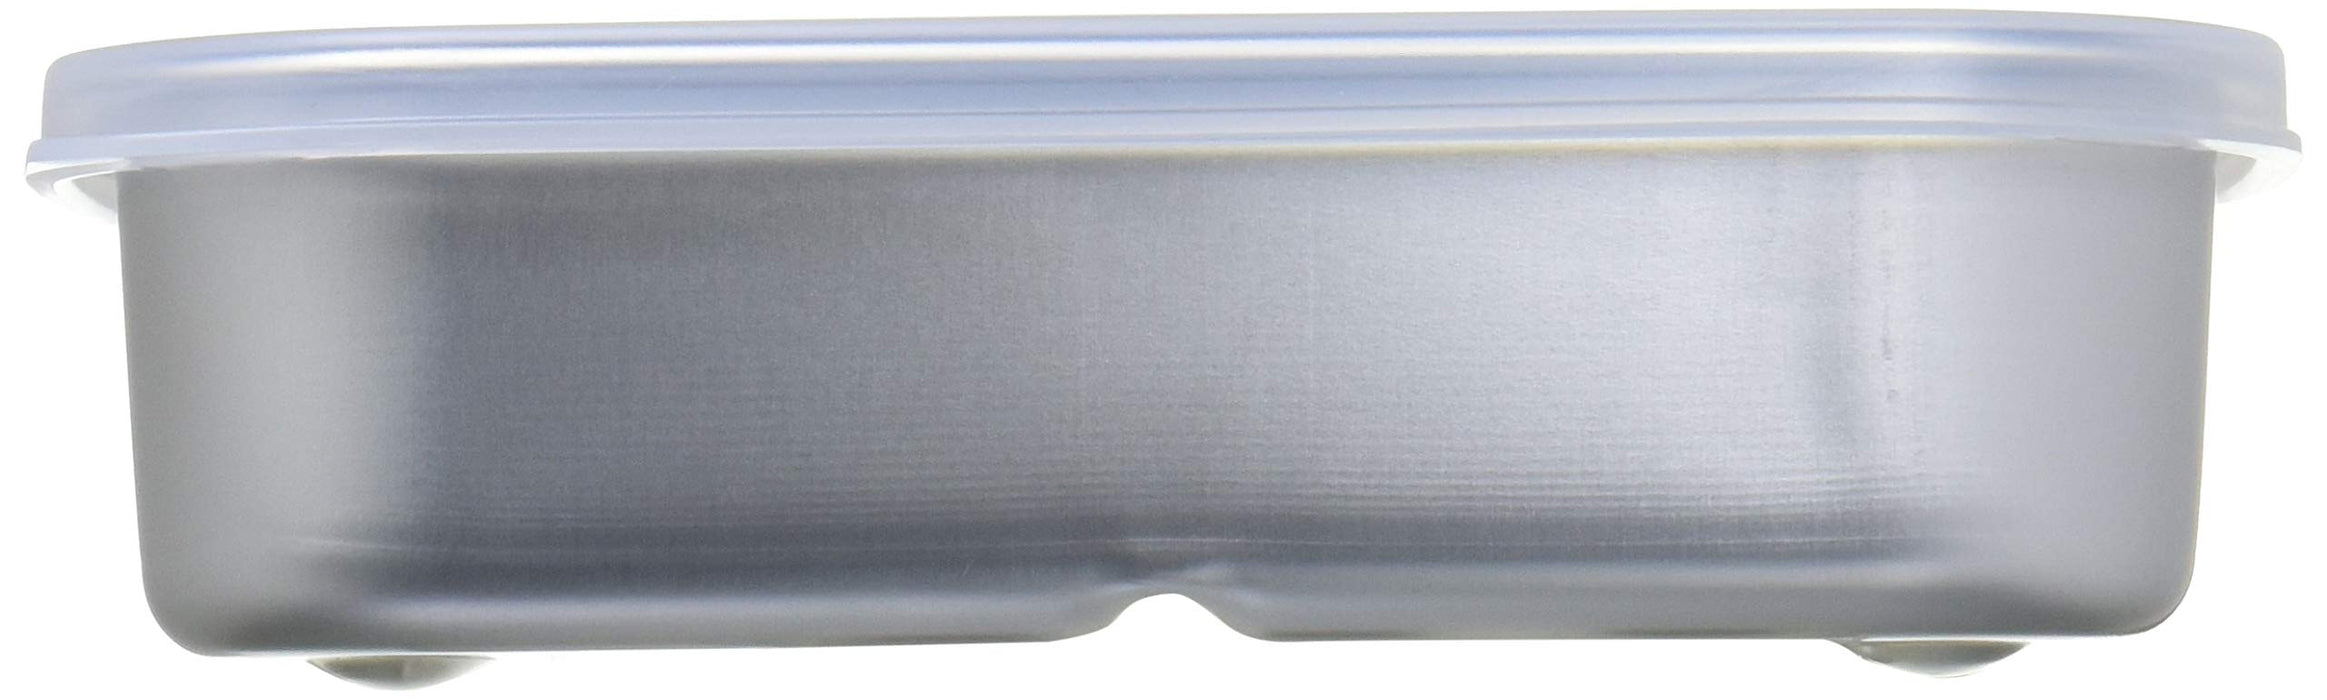 Stockage à refroidissement rapide en aluminium naturel Skater 500 ml - Série S Akh2